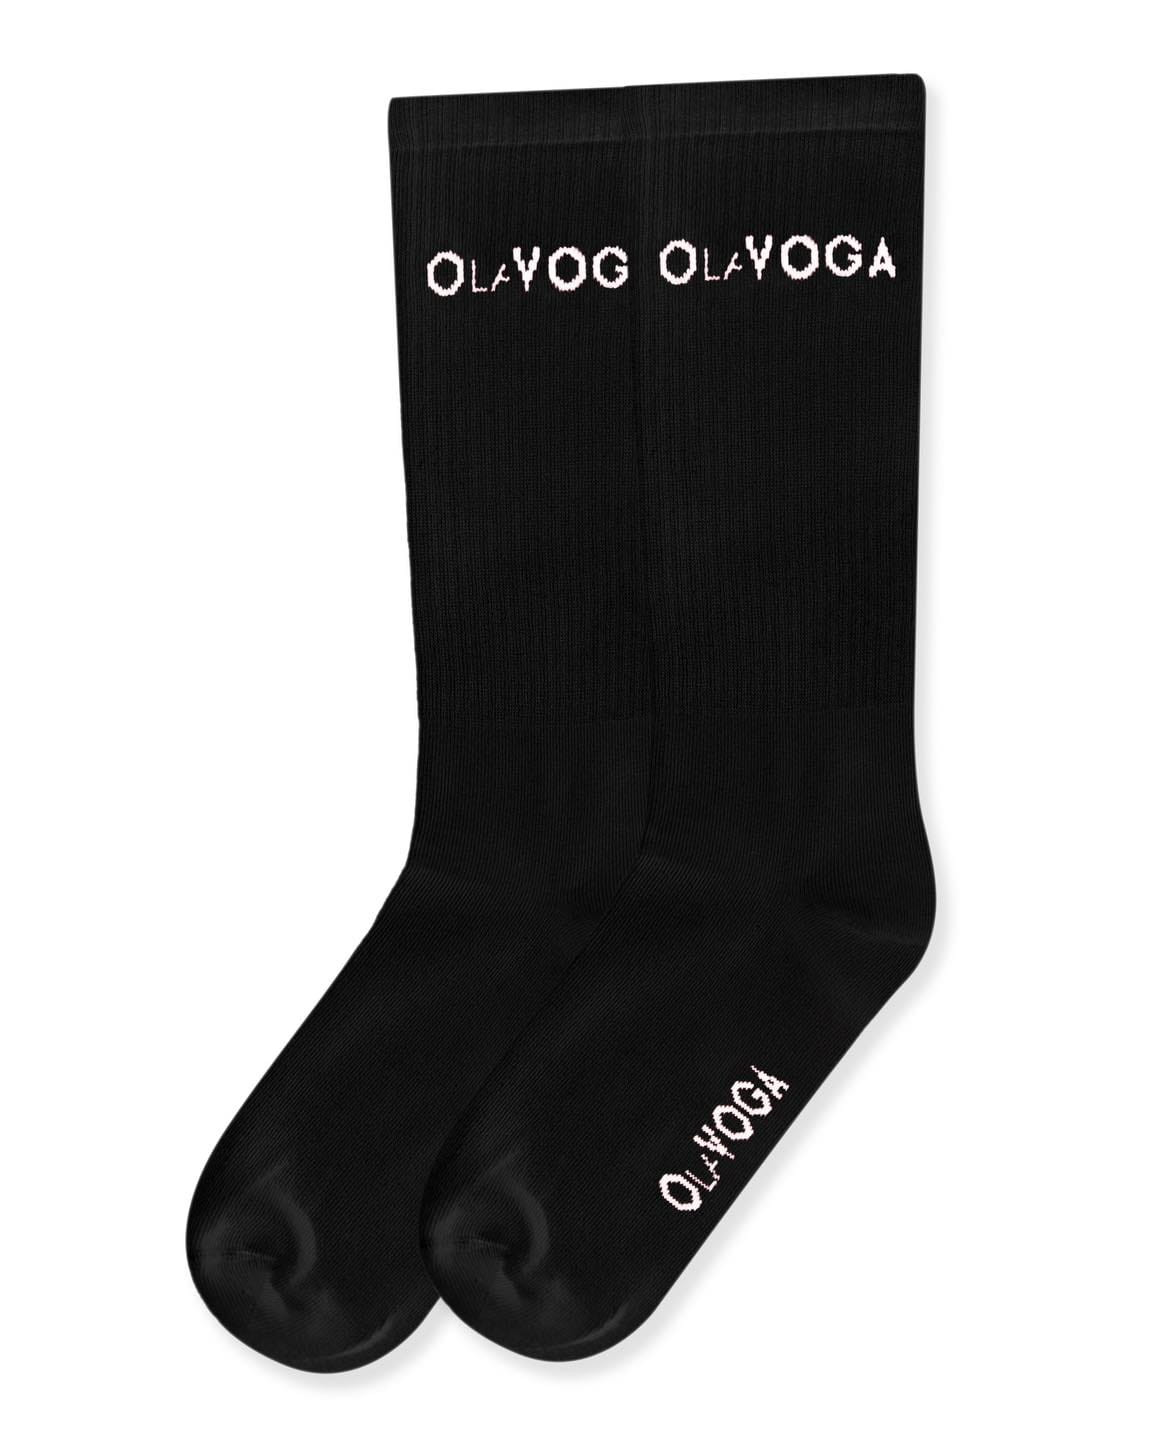 Dámské klasické ponožky 279336 černé - Ola Voga 36-41